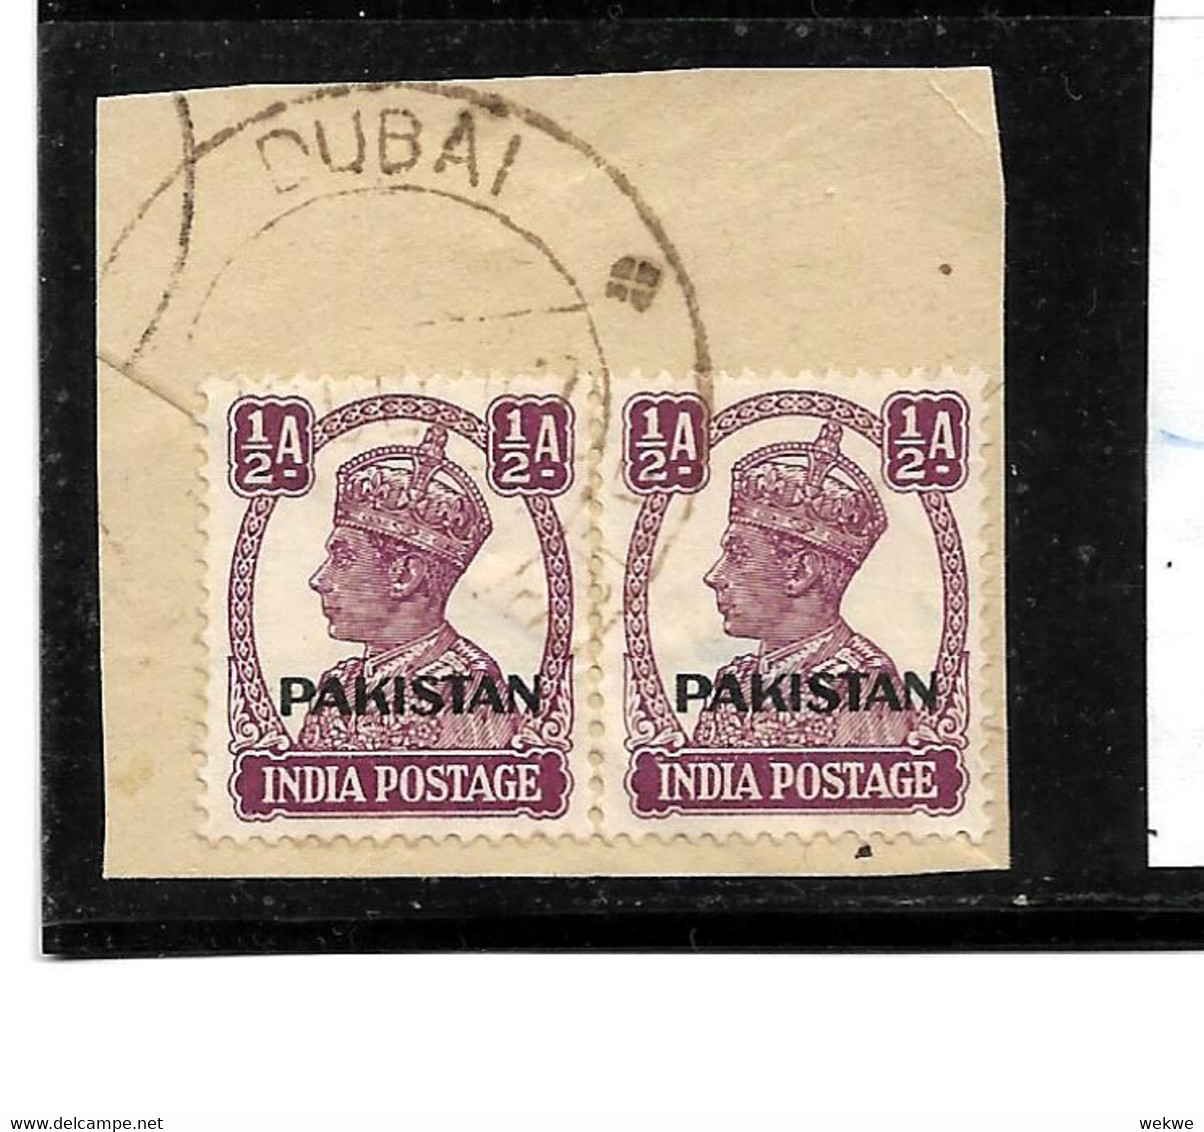 DUBAi - Ausschnitt -  Von 1947-48 Gab Es Das Pakistanische P.A., Danach War Die Post Wieder Unter Brit. Verwaltung - Abu Dhabi